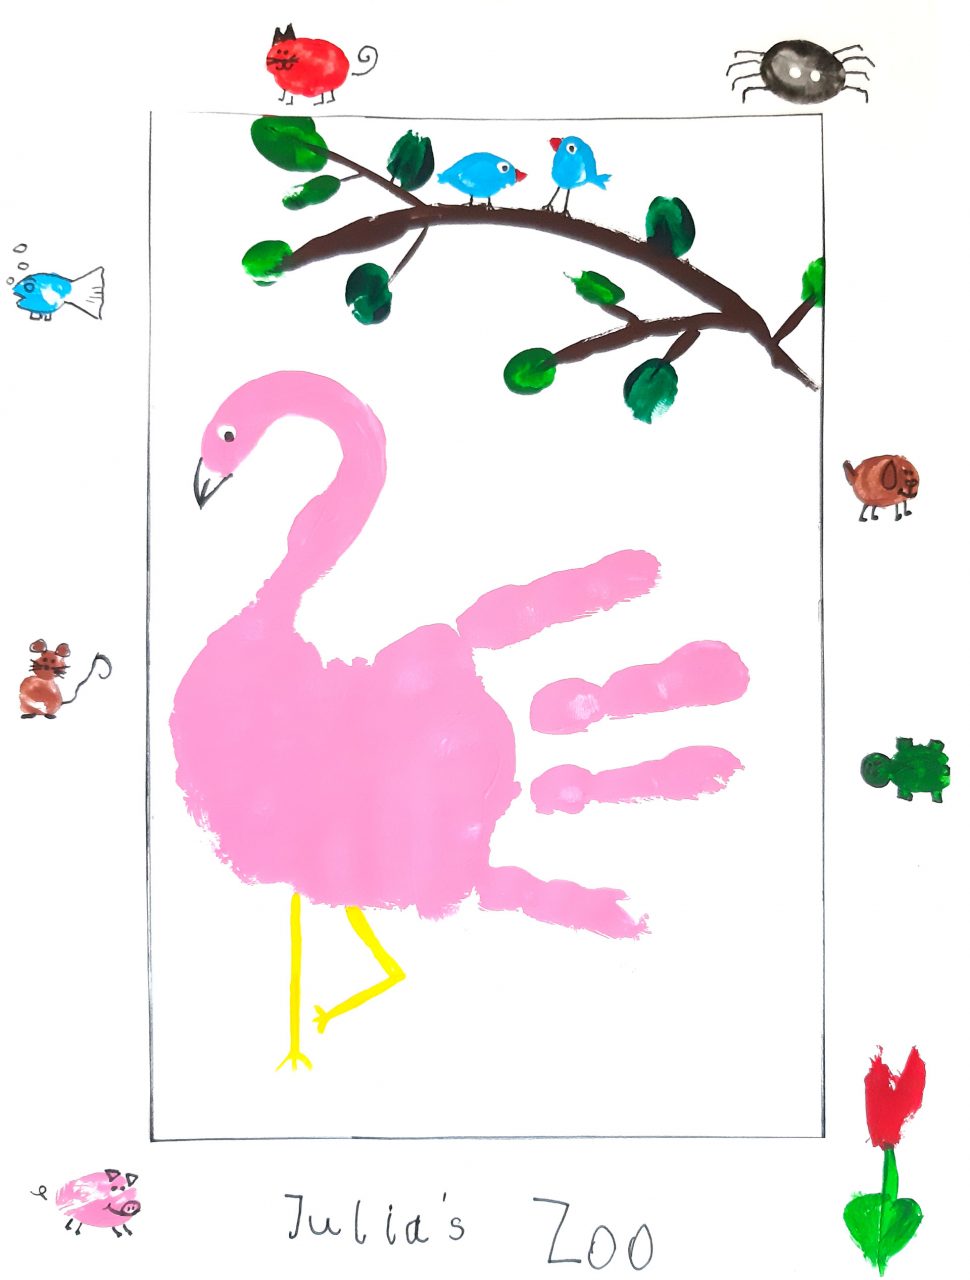 Hallo, hier ist Julia. Ich bin 6 Jahre alt. Das soll mein Zoo sein. Ein Flamingo, Schwein, Maus, Fisch, Katze, Spinne, Hund, Schildkröte, Vögel und eine Tulpe.